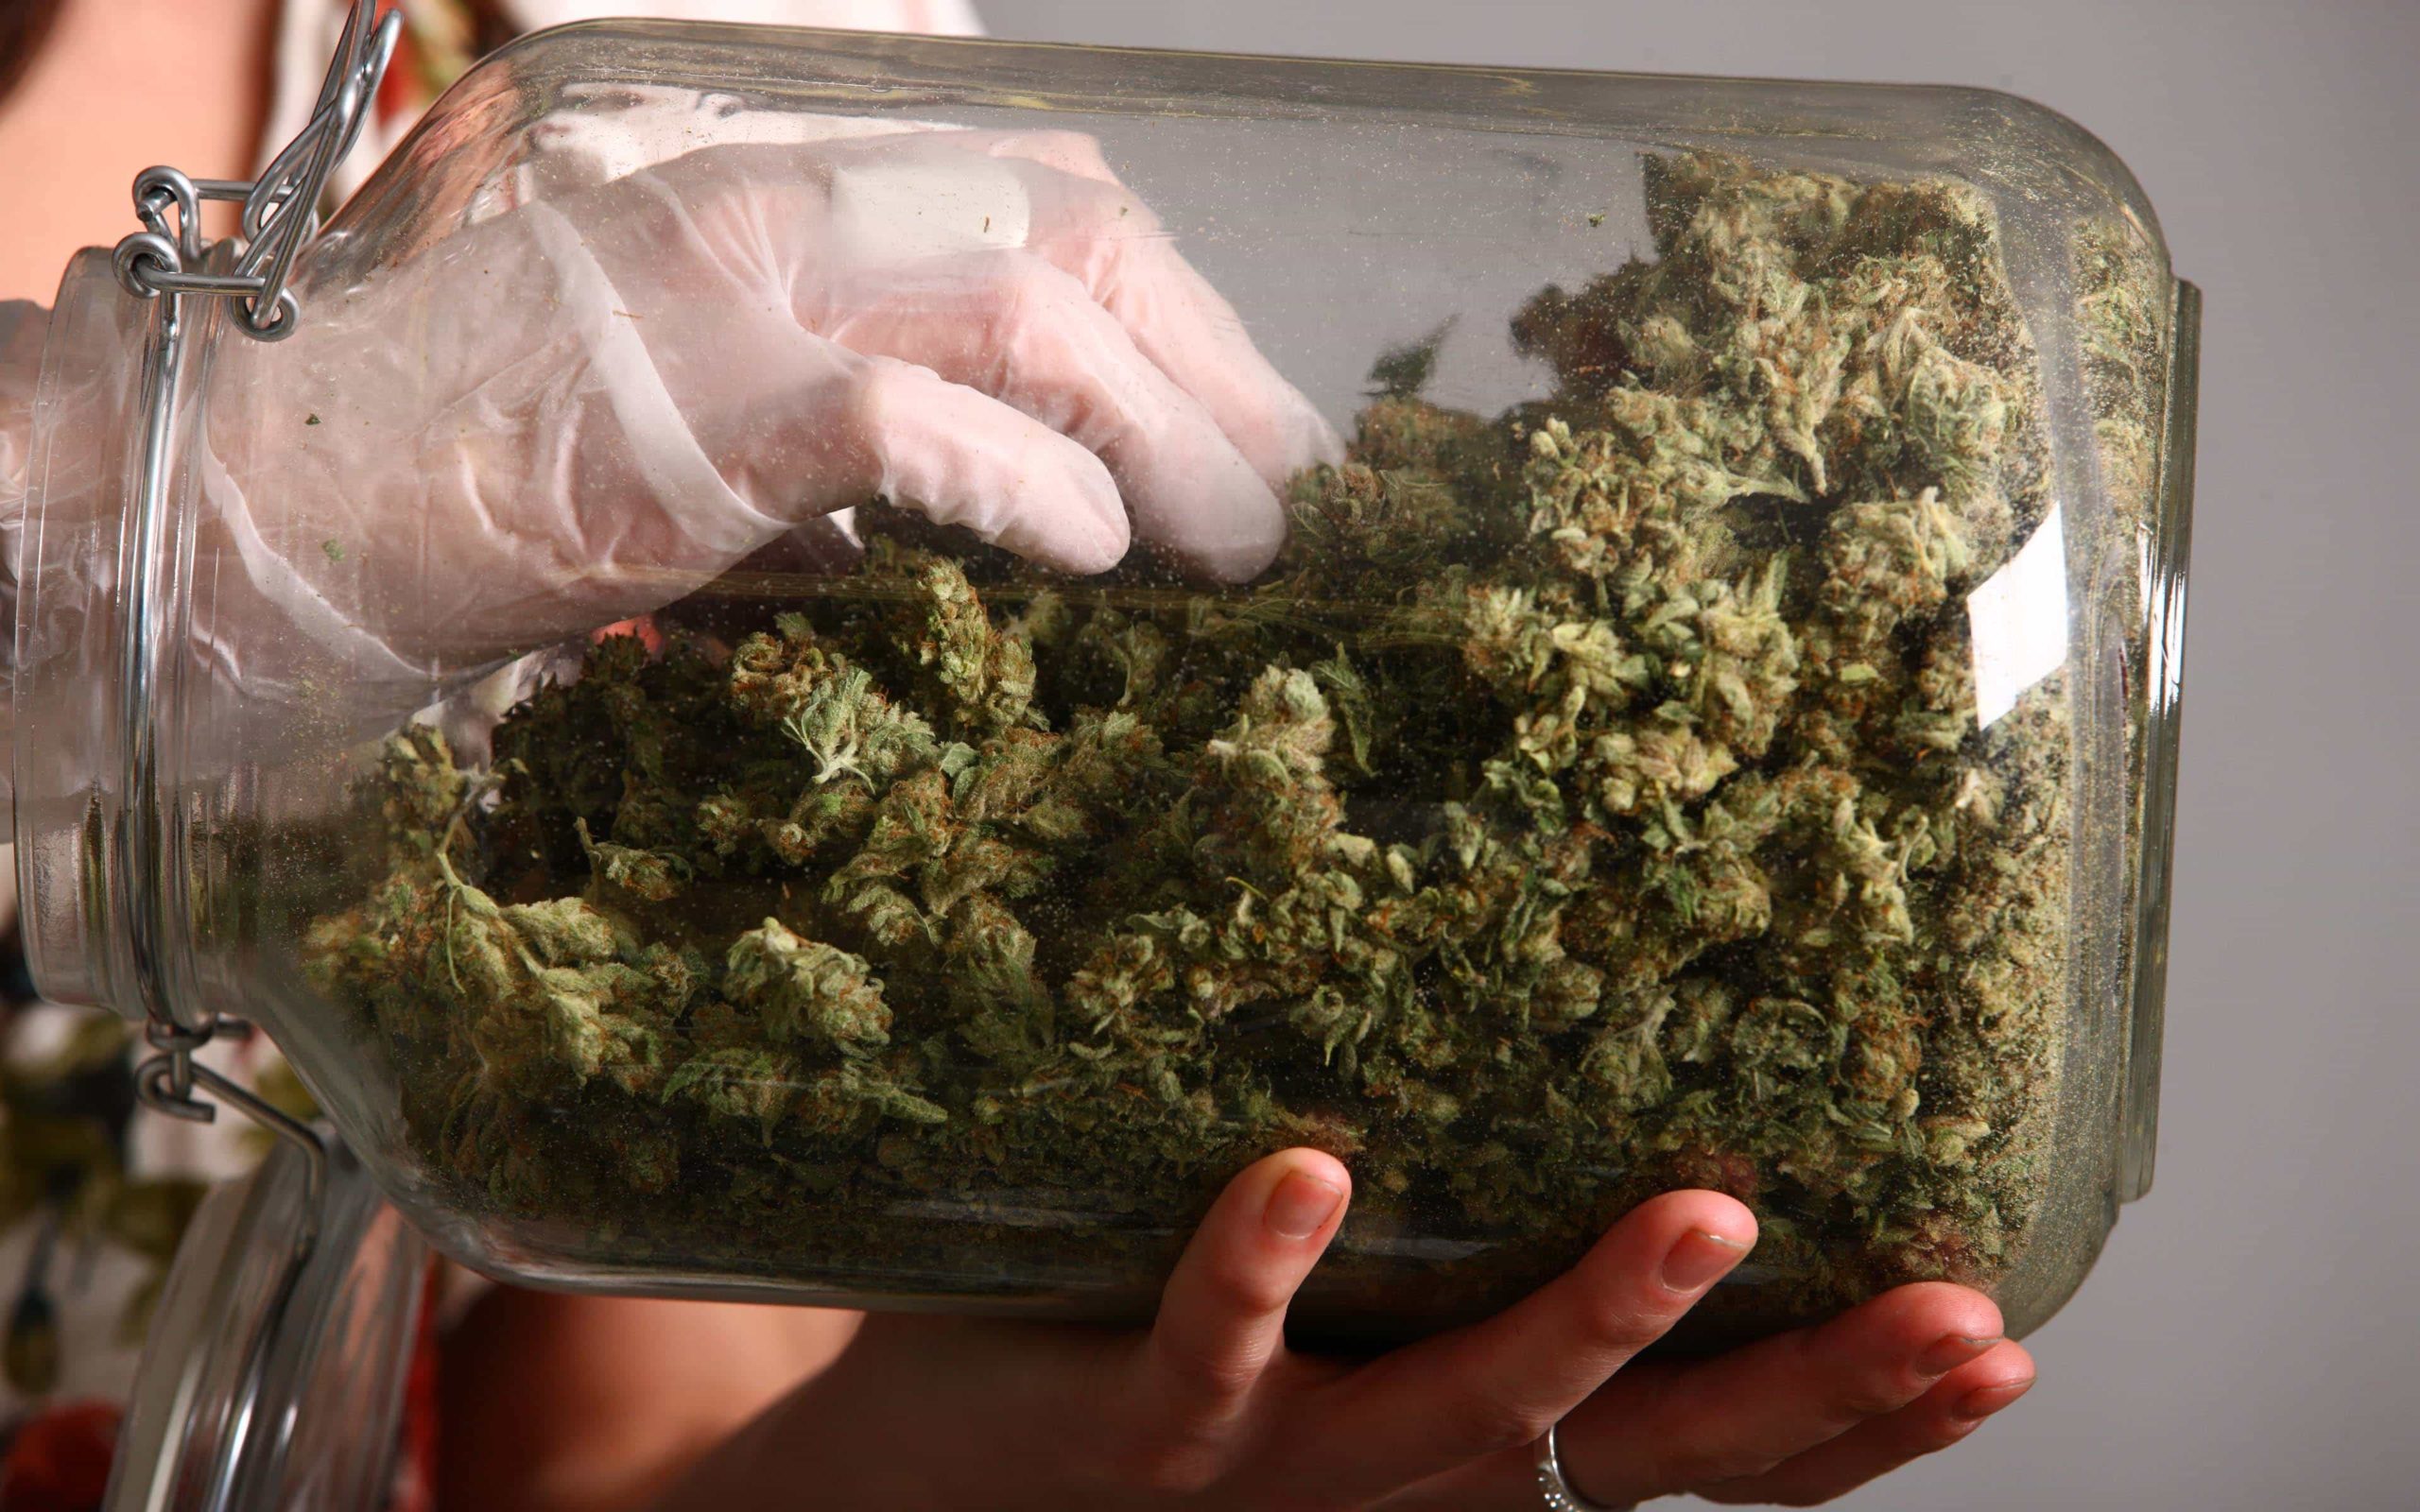 Maui Medical Marijuana Dispensary to Close Temporarily | High Times